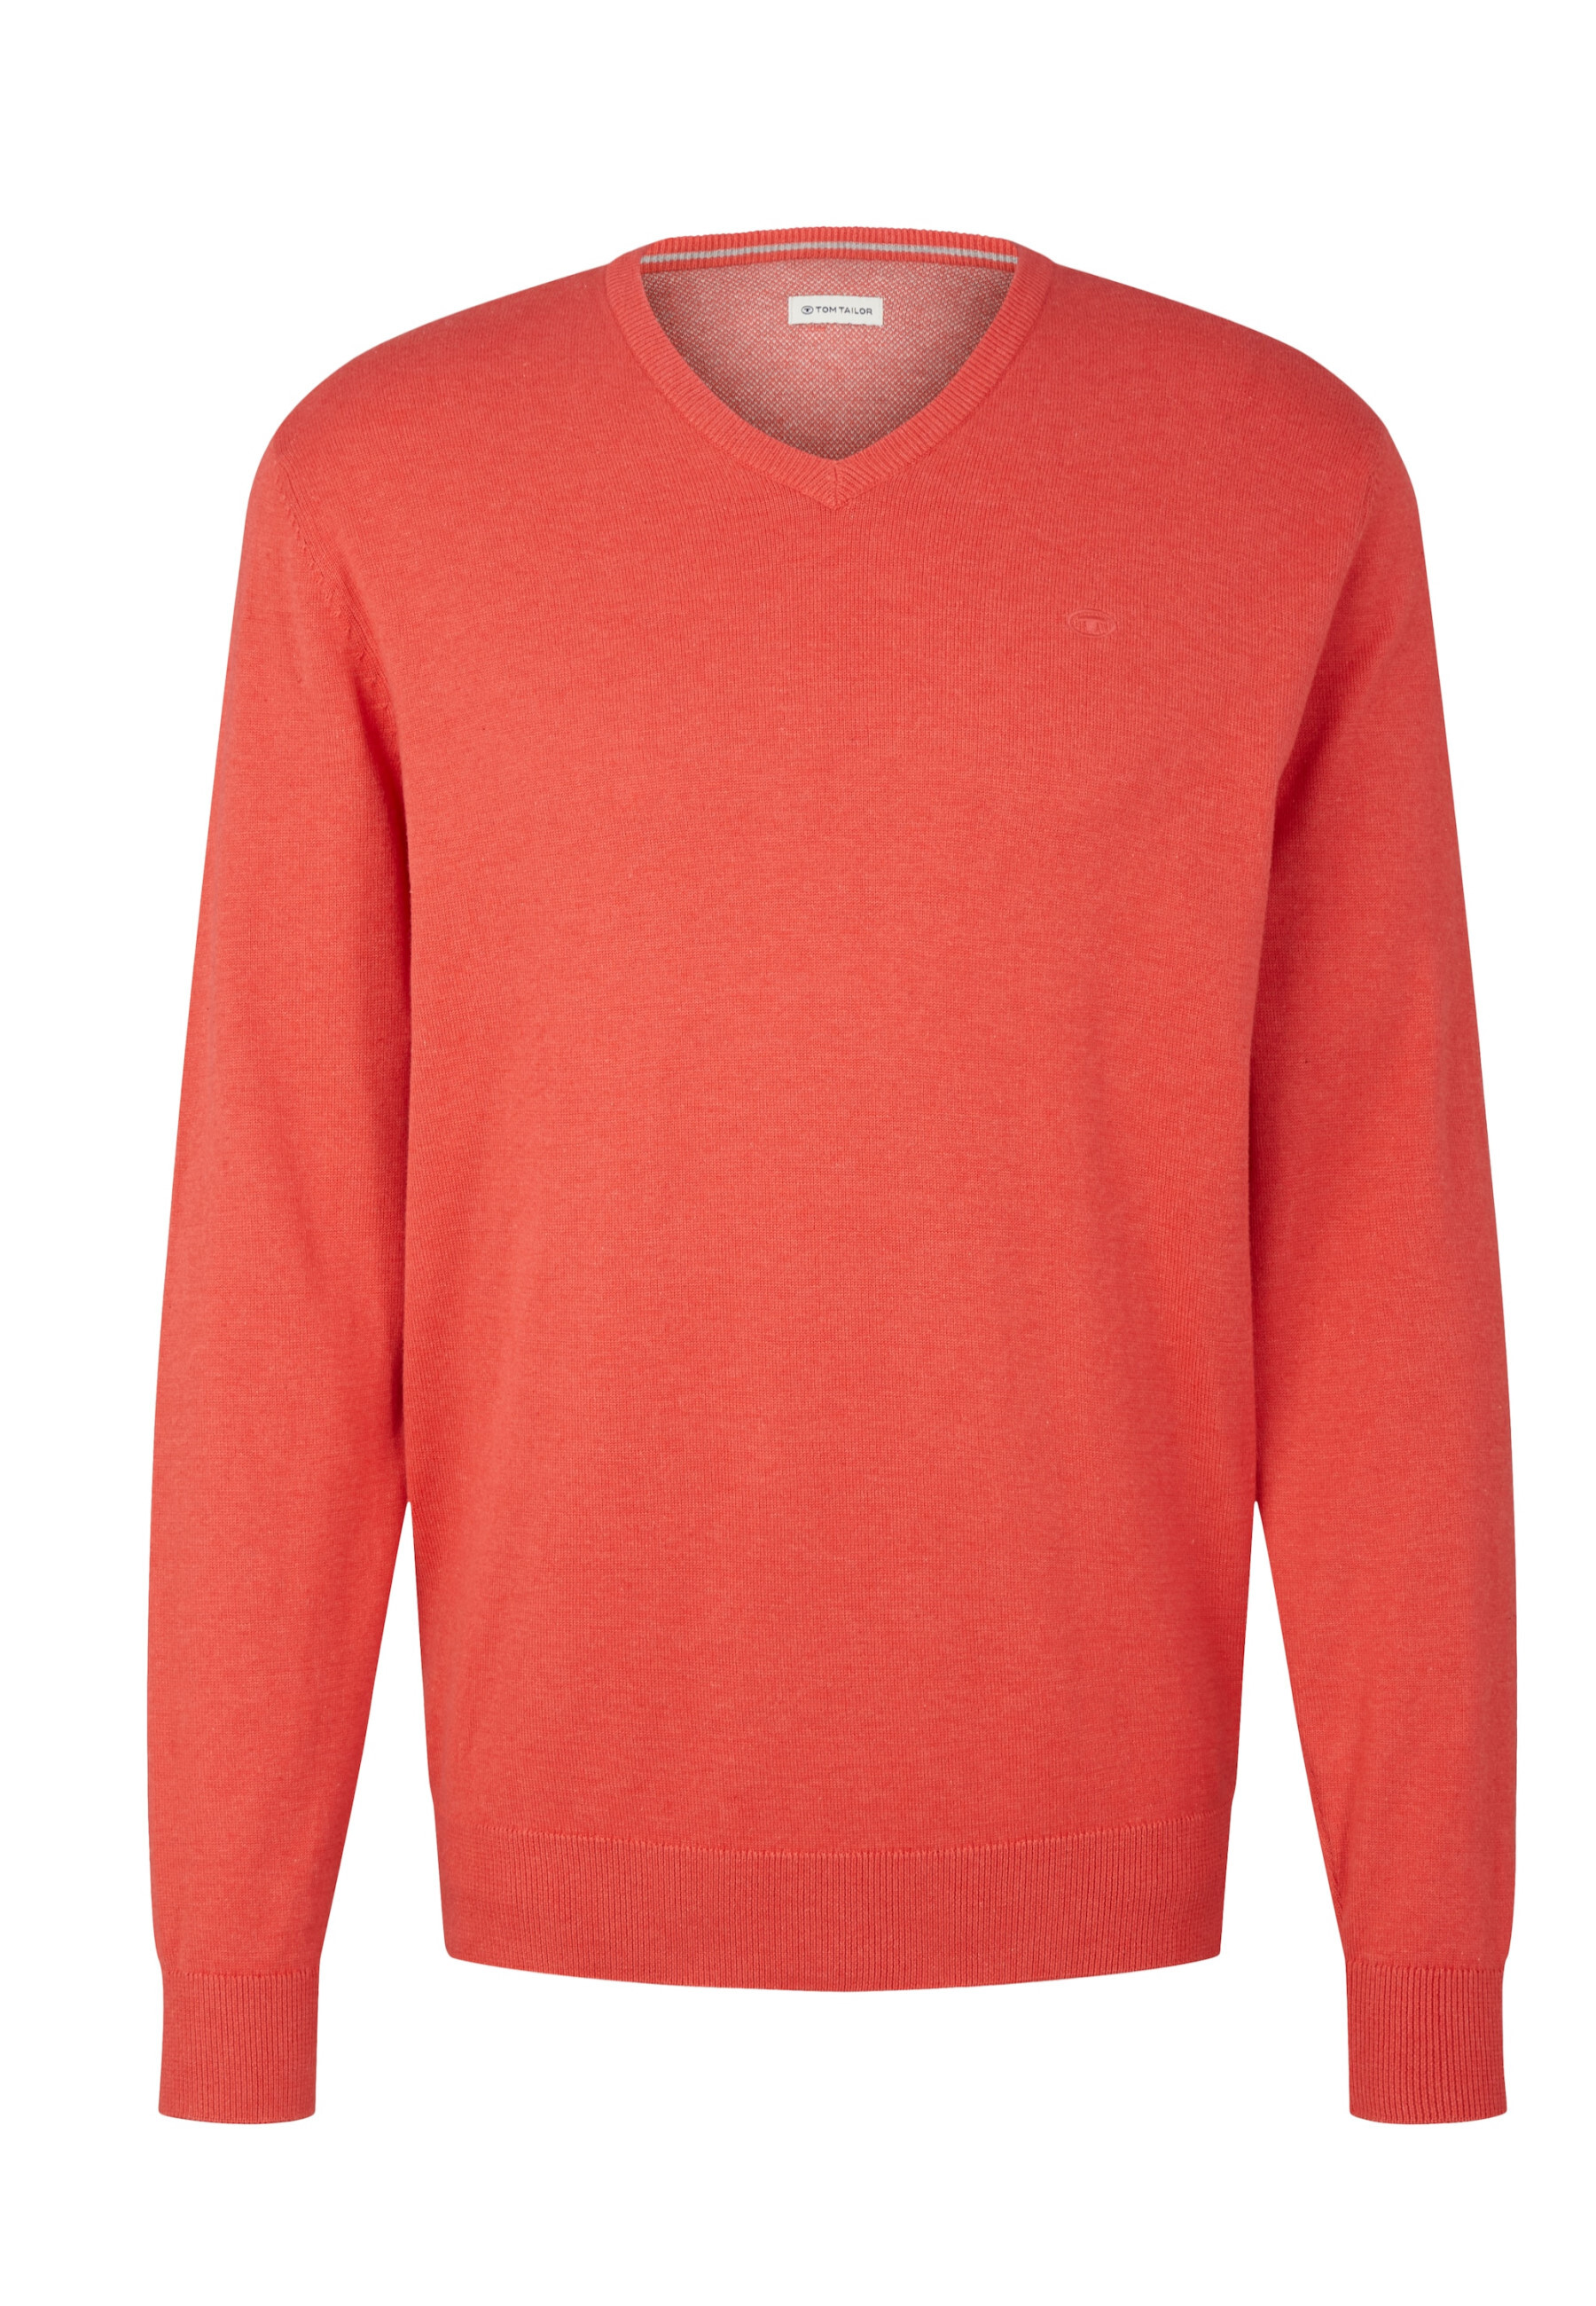 Пуловер Tom Tailor, красный